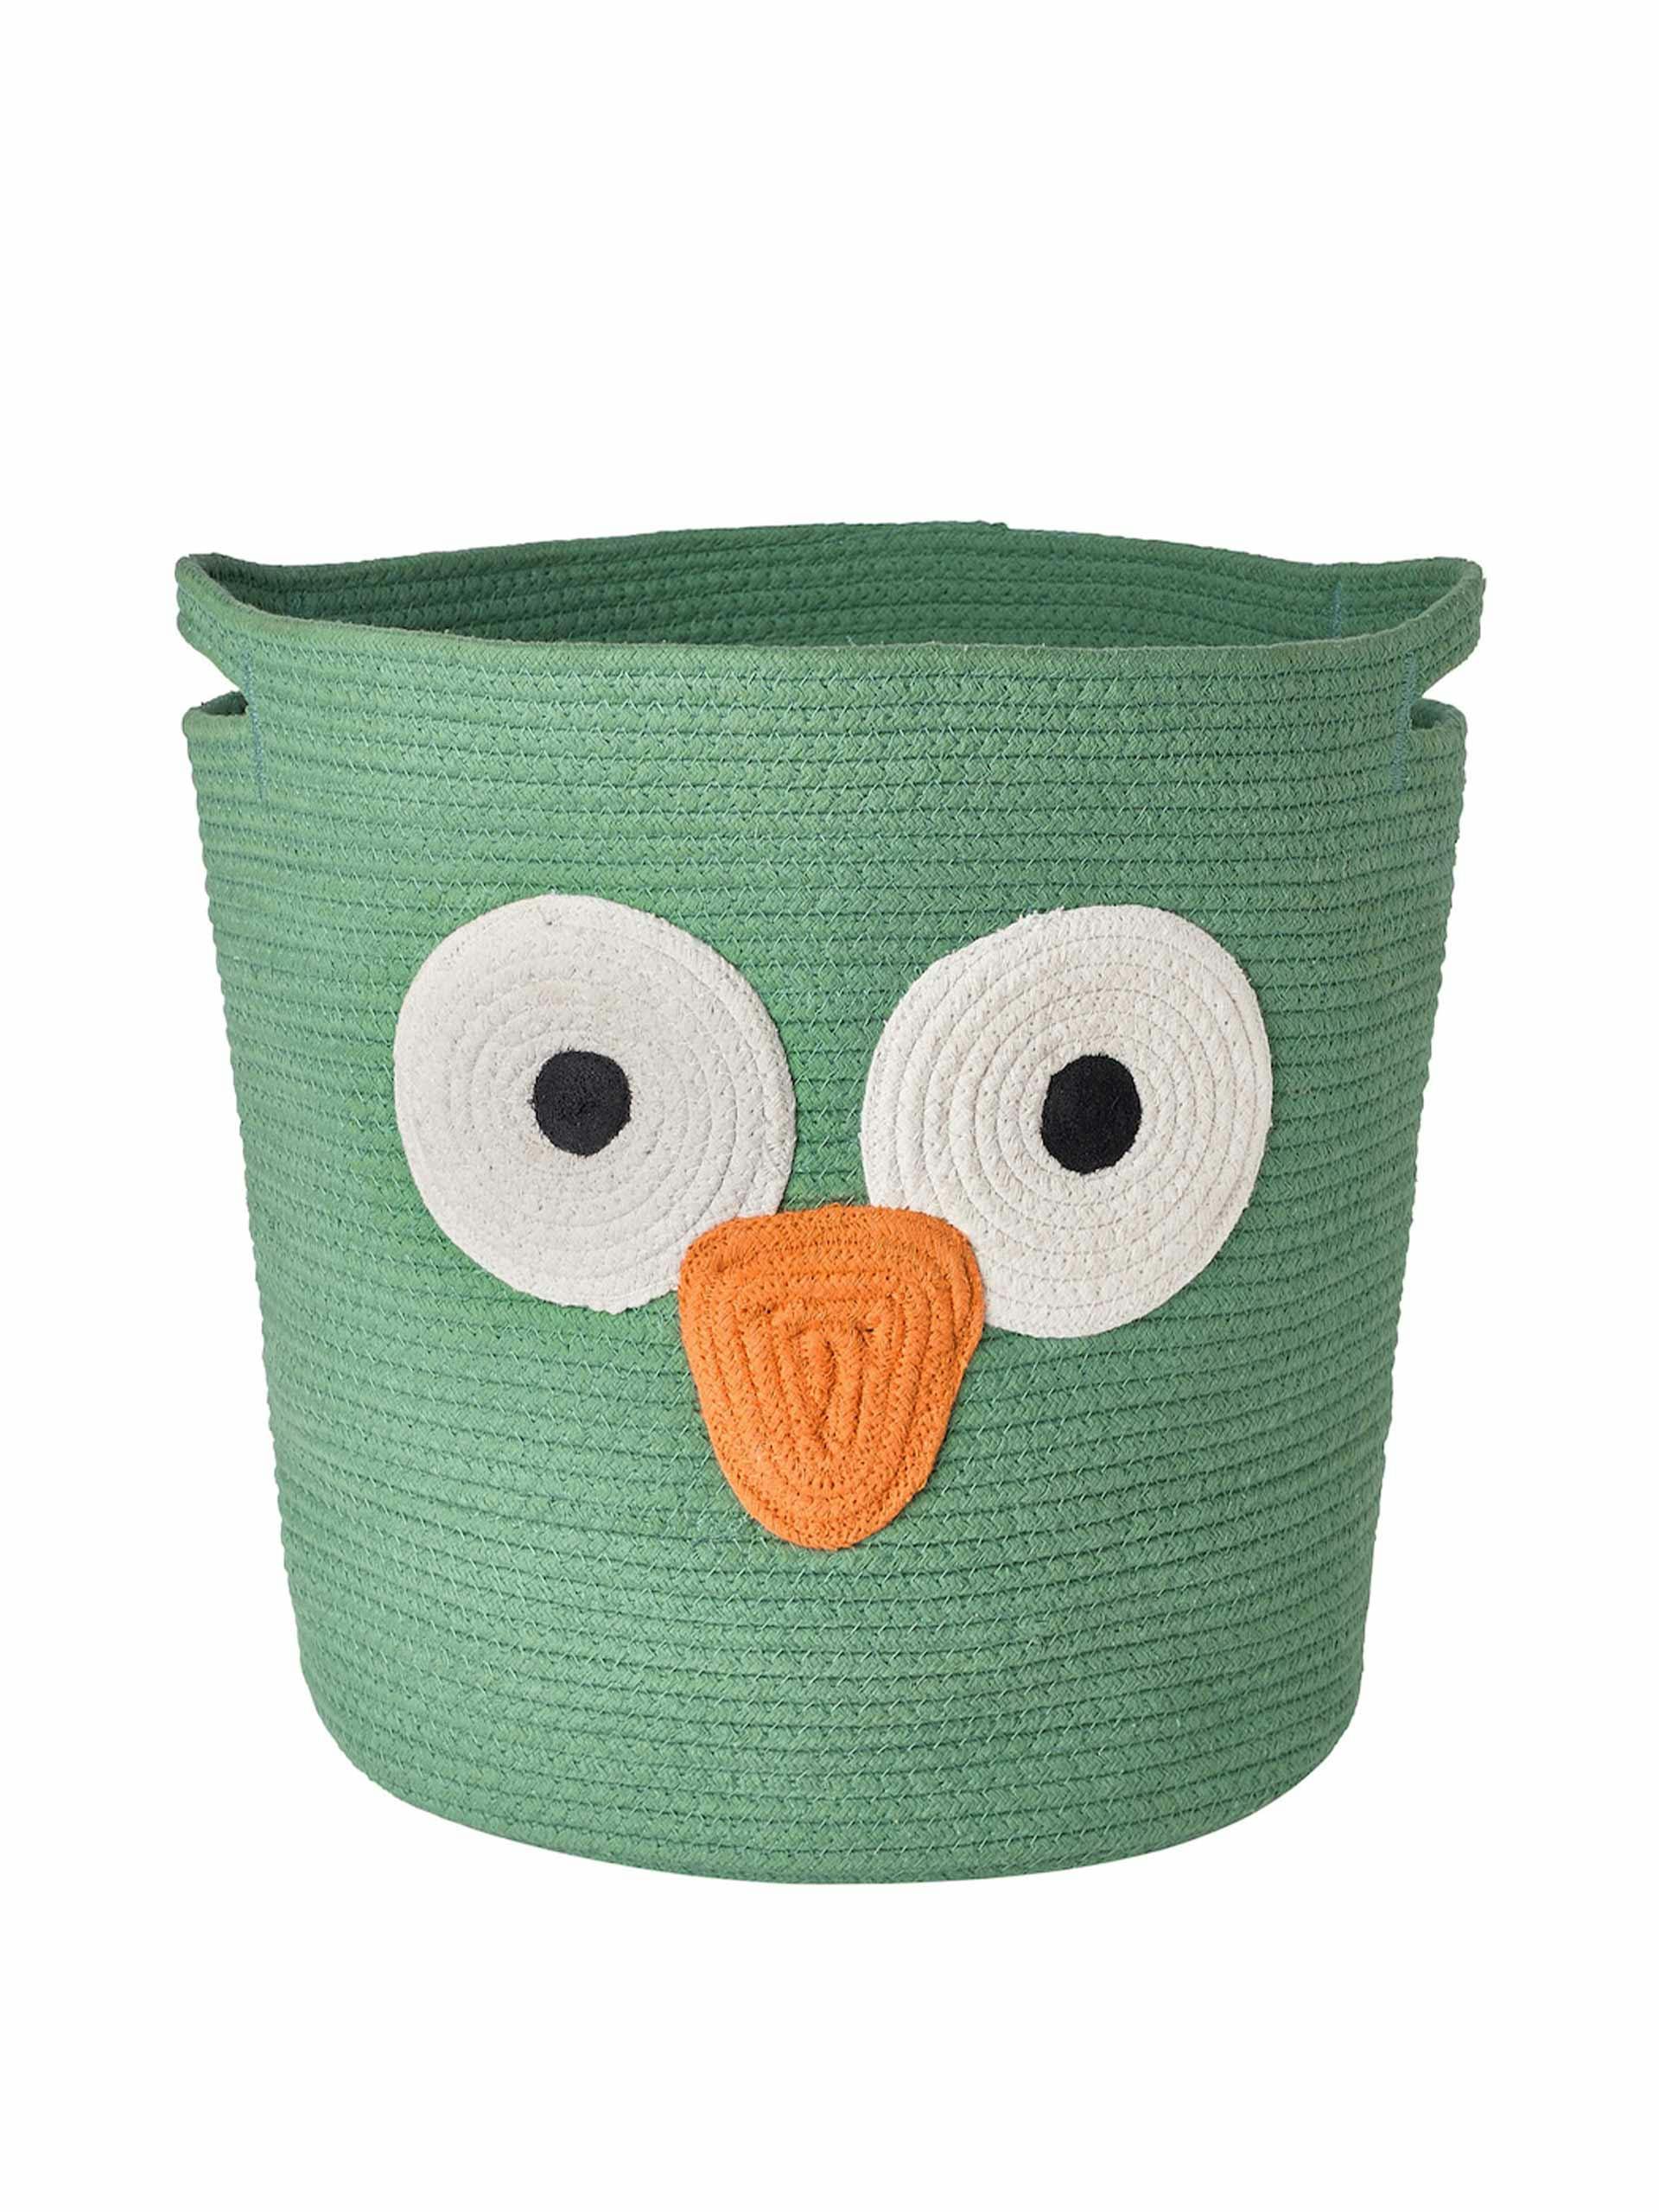 Owl storage basket